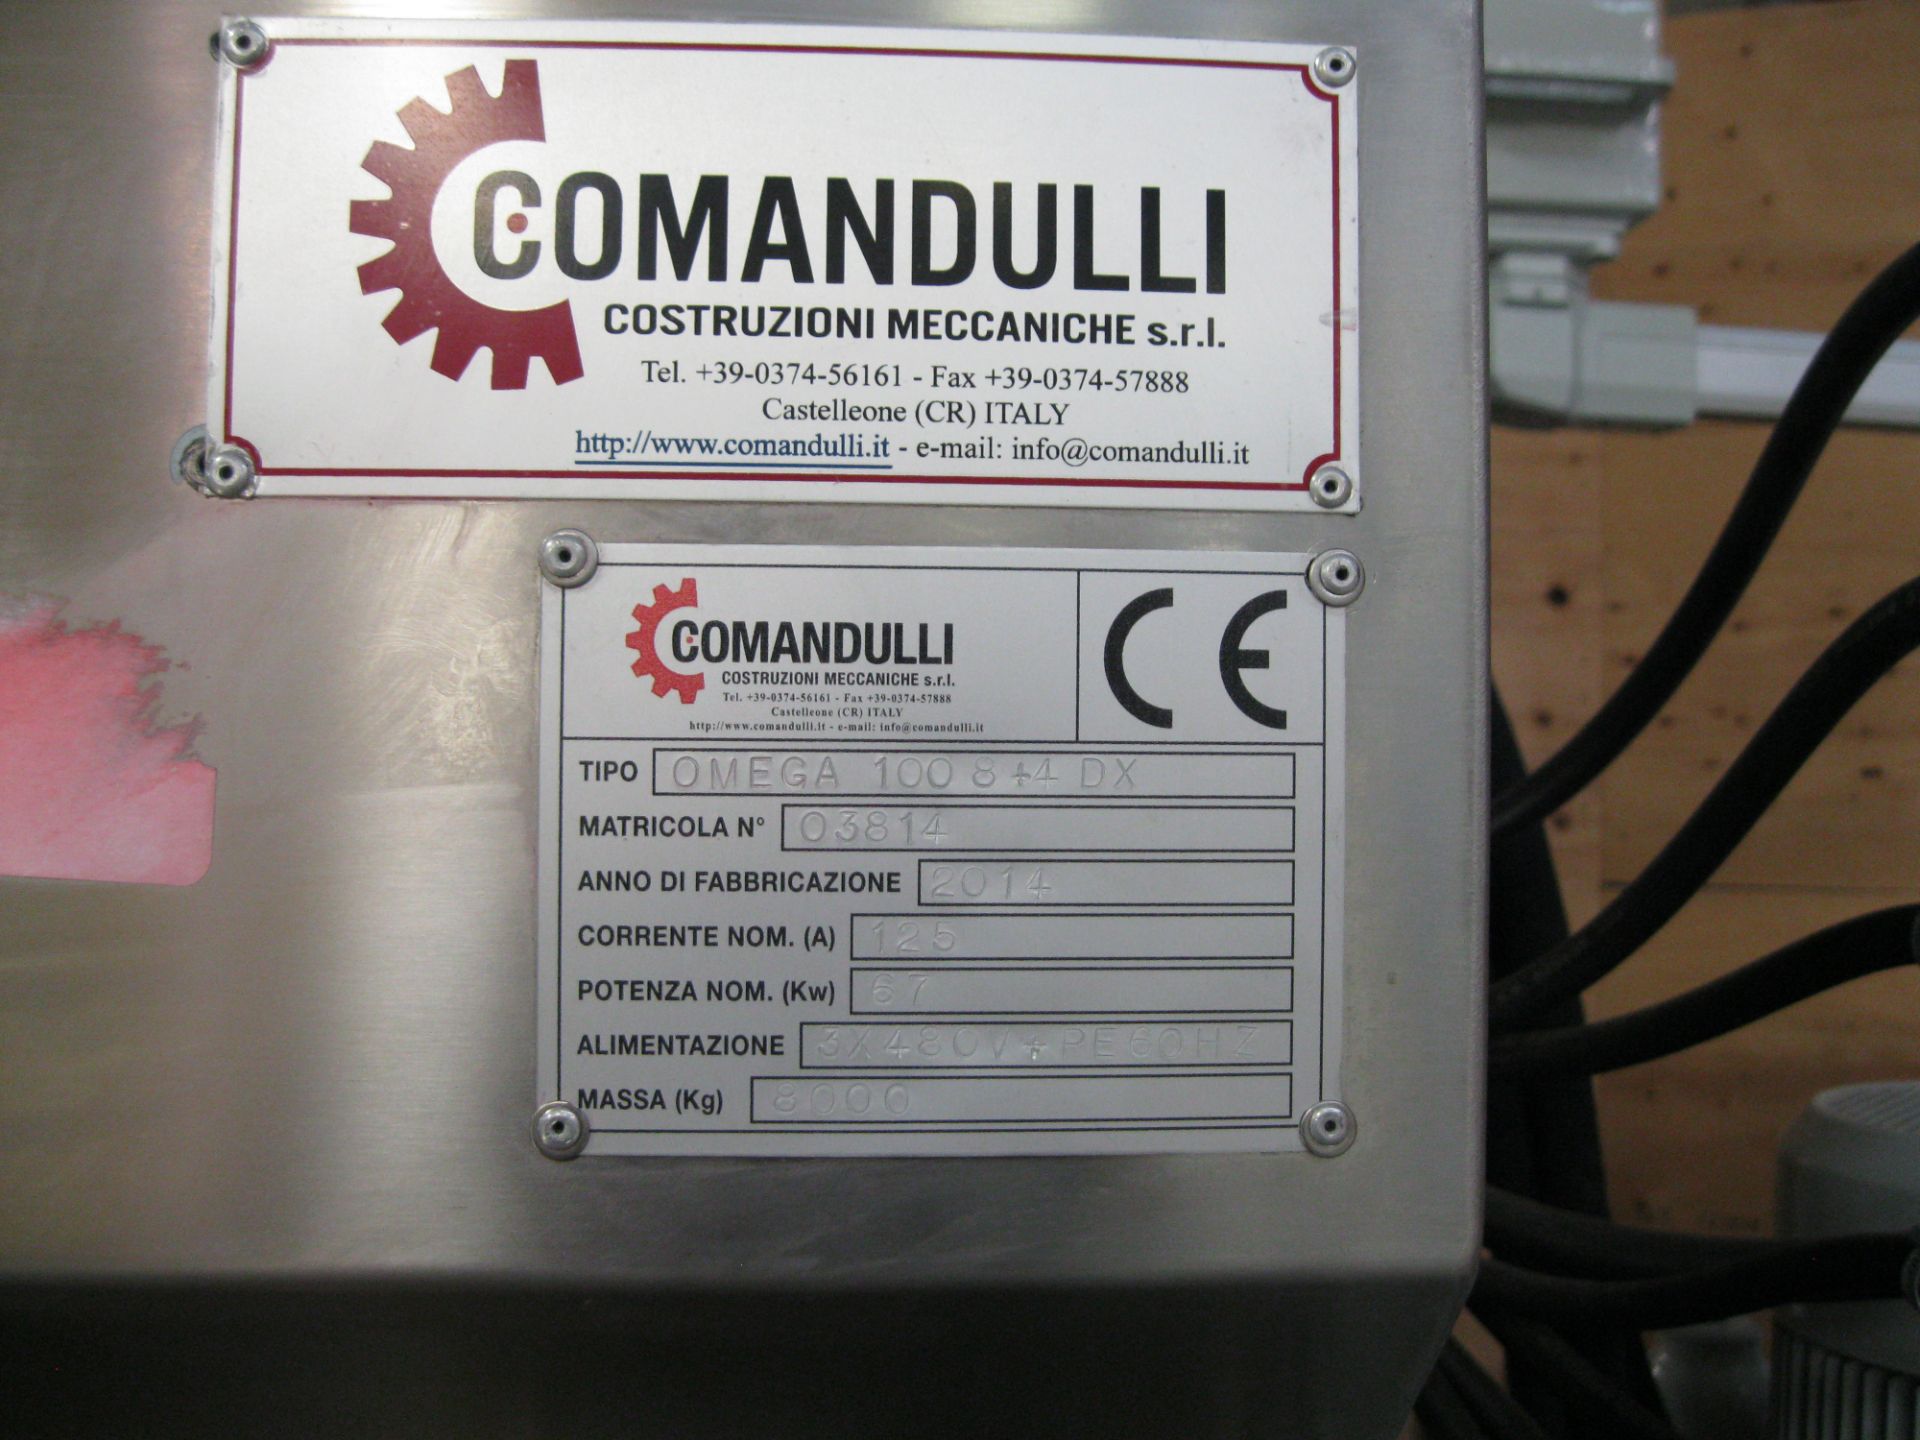 2014 Comandulli automatic multi-spindle conveyor belt polishing machine model Omega-100 8+4 DX  S/ - Image 2 of 12